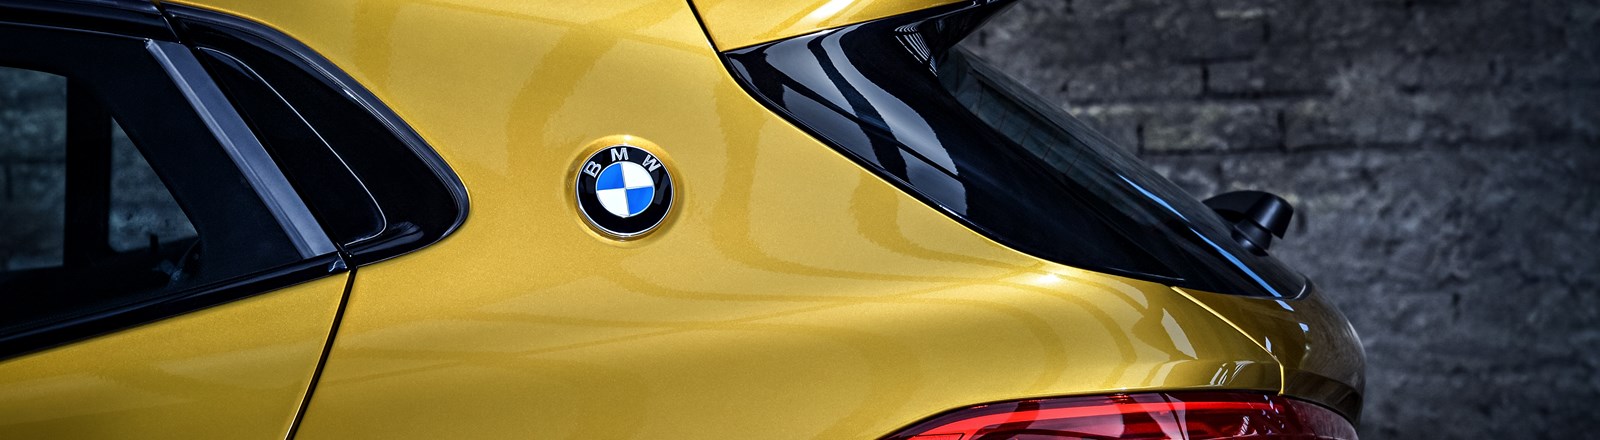 BMW X2 - BMW logo.jpg